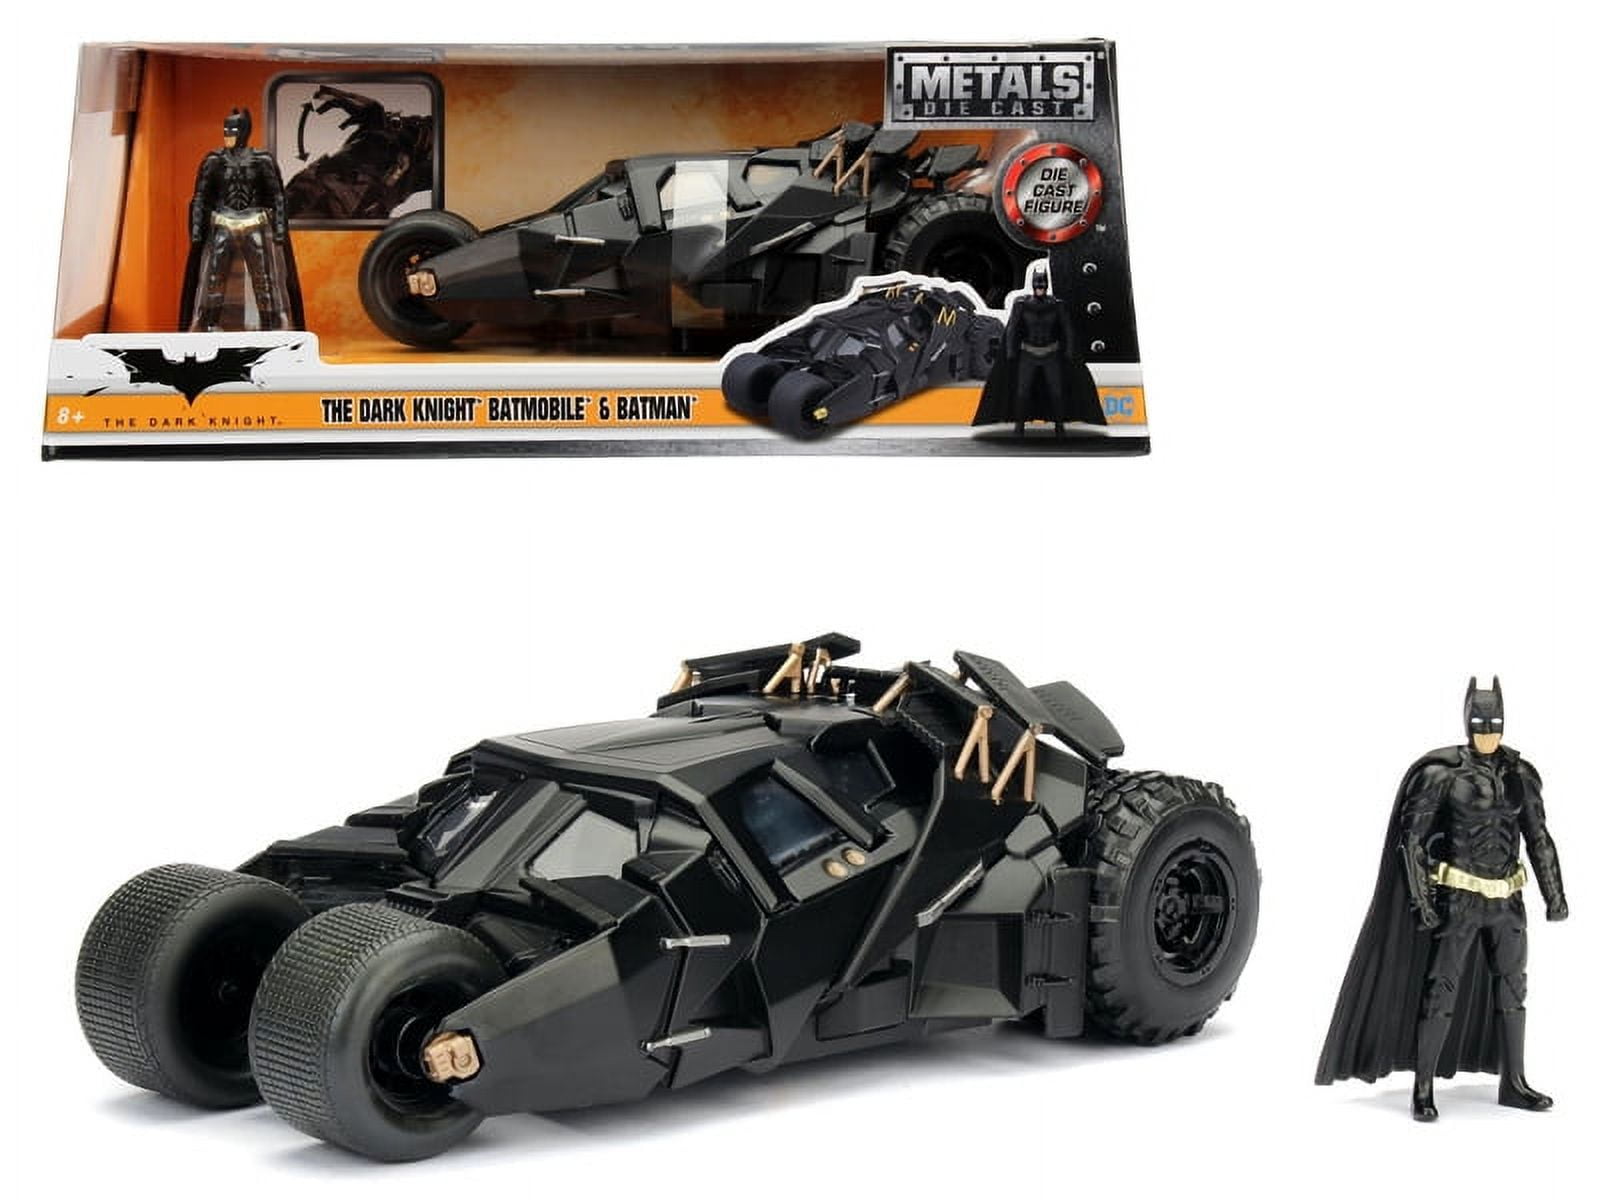 1/25 Moebius Batman vs Superman Dawn of Justice Batwing w/Interior Plastic  Model Kit 